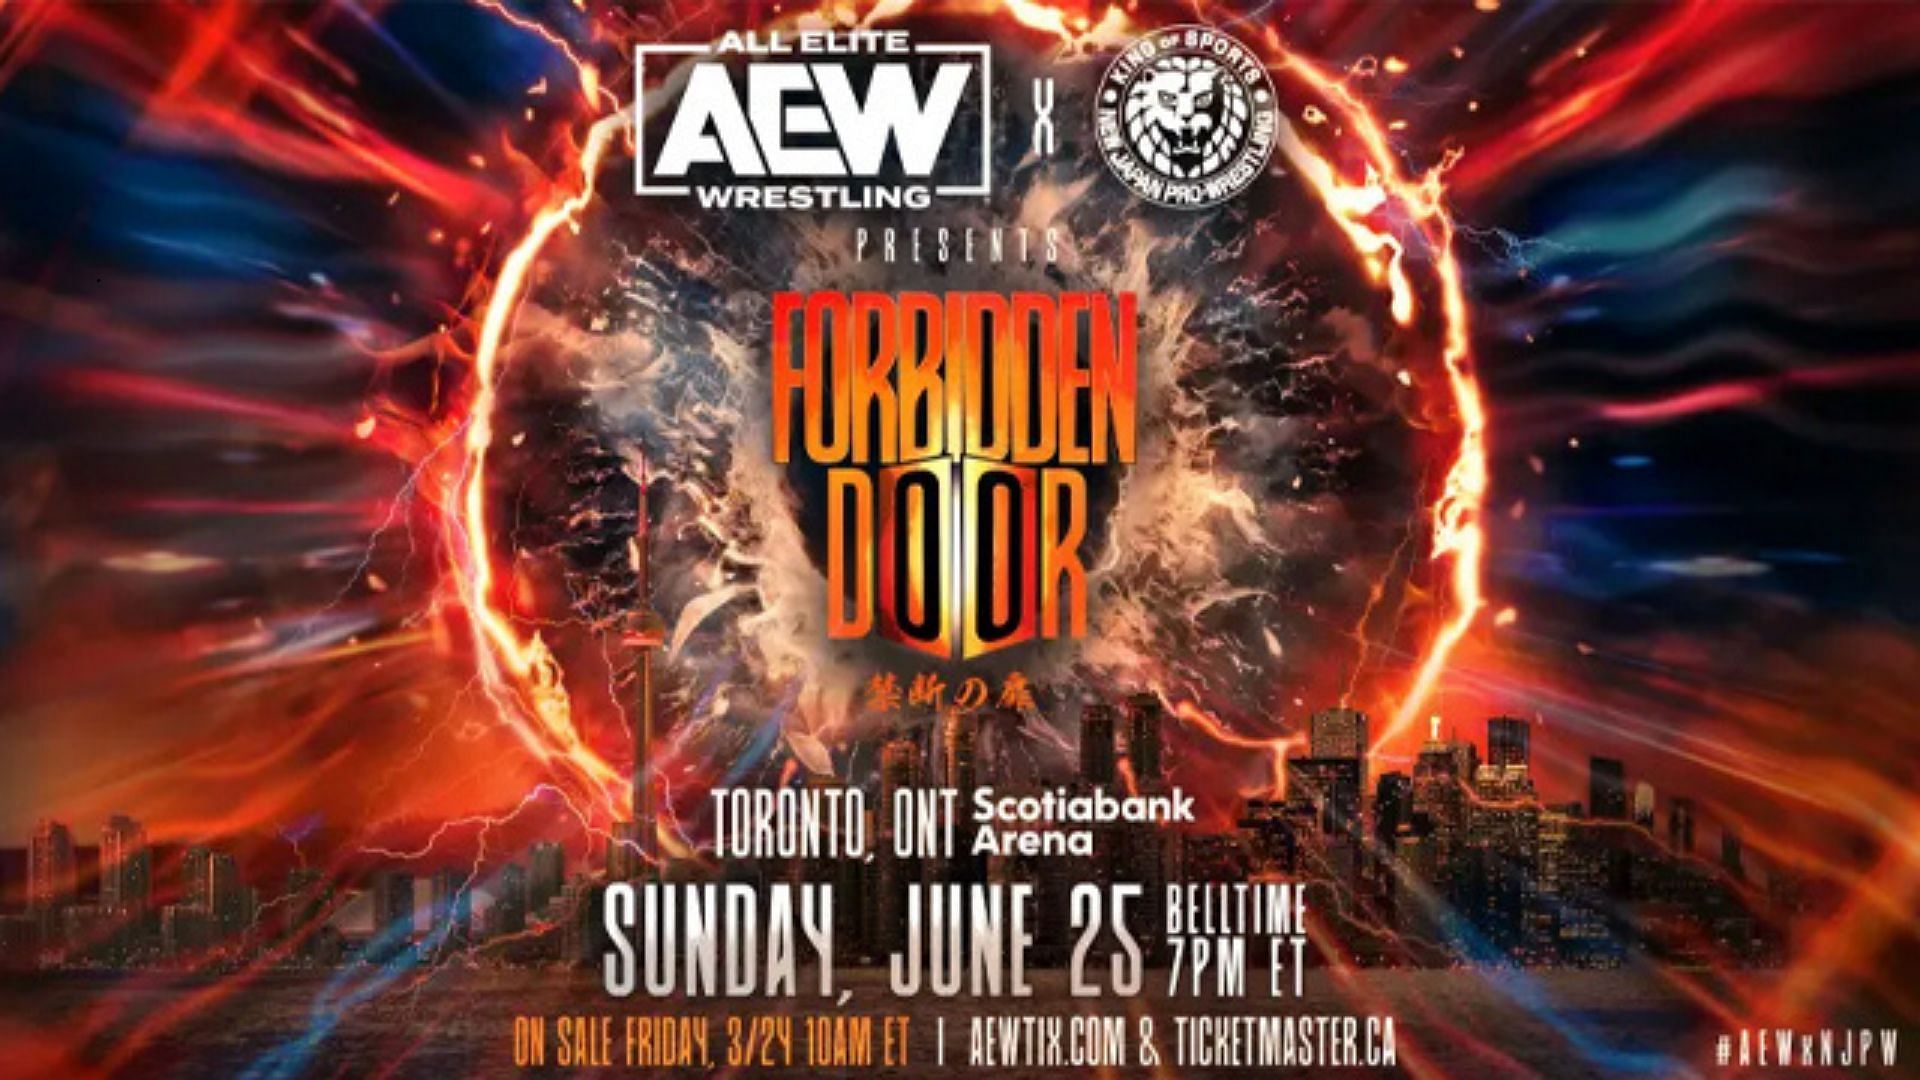 Forbidden Door is a crososver event betweeen AEW and NJPW